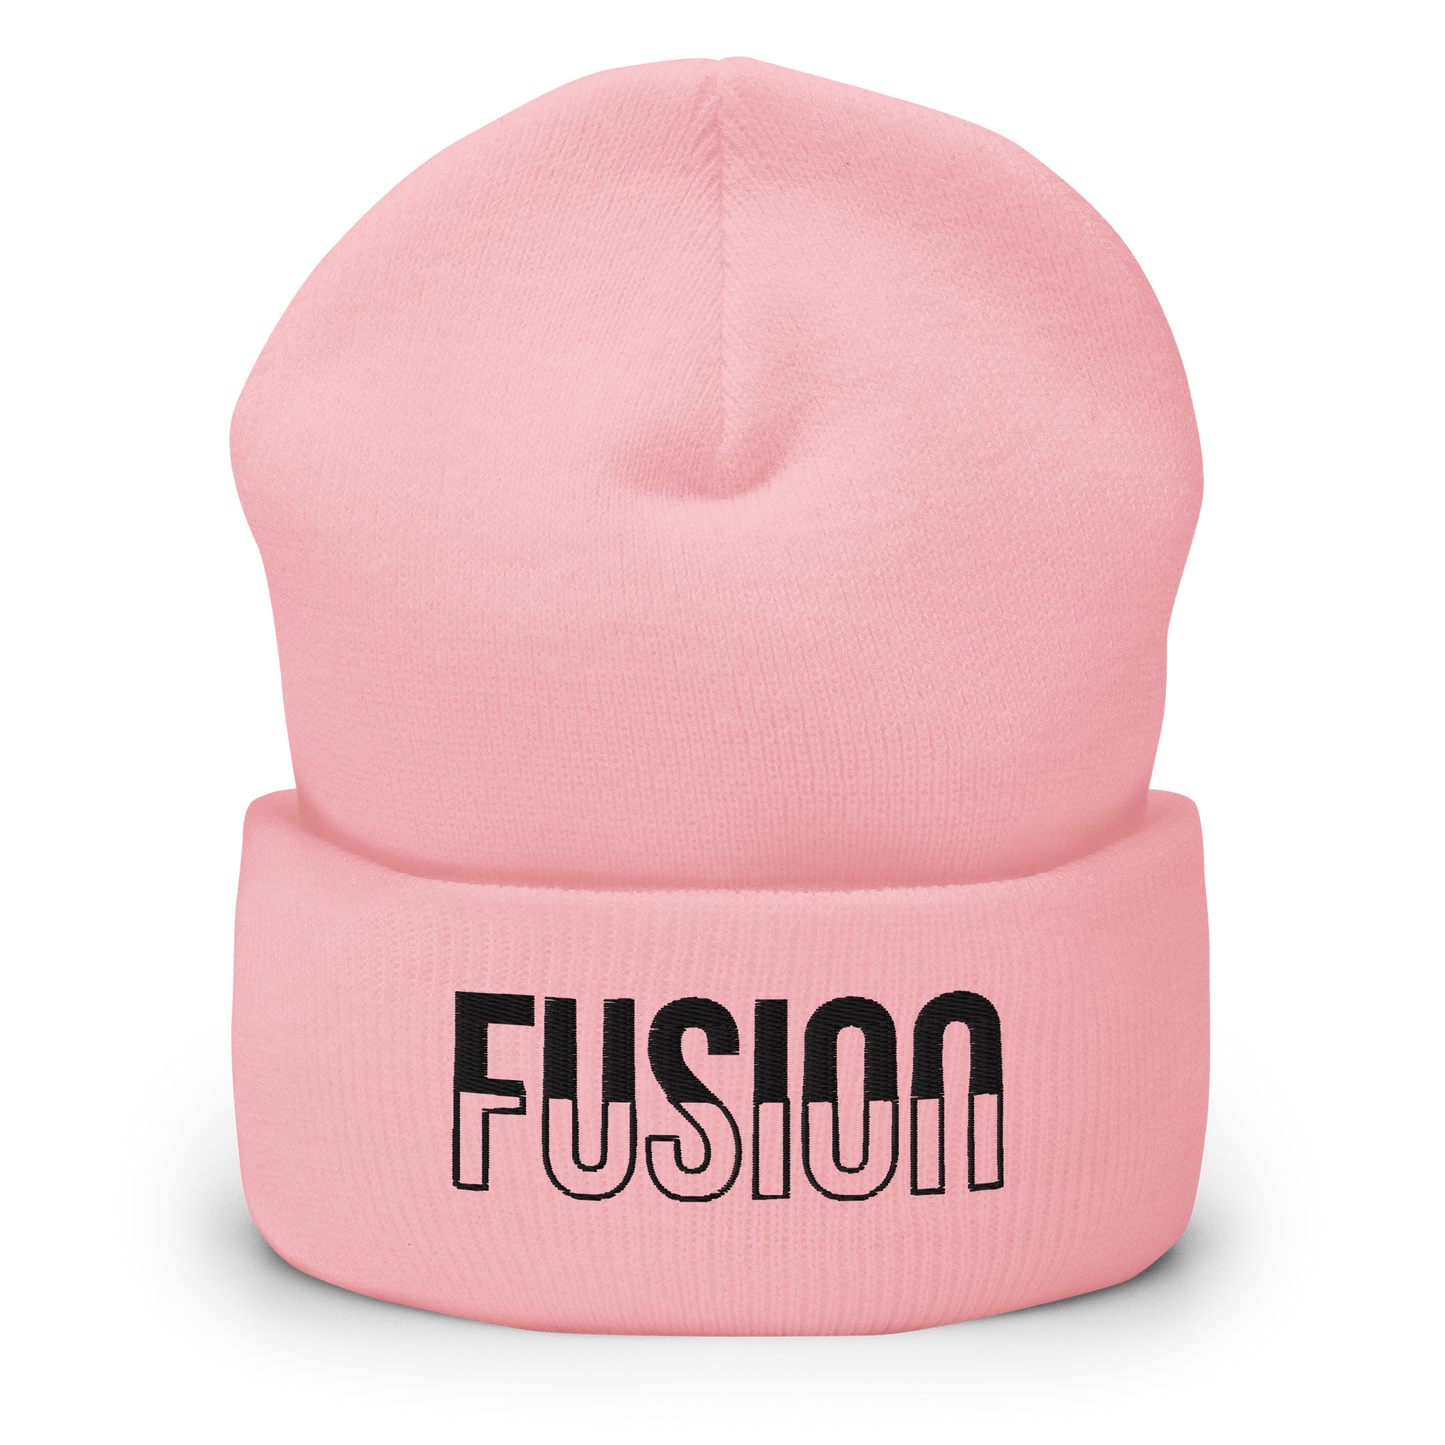 Fusion Pink Beanie